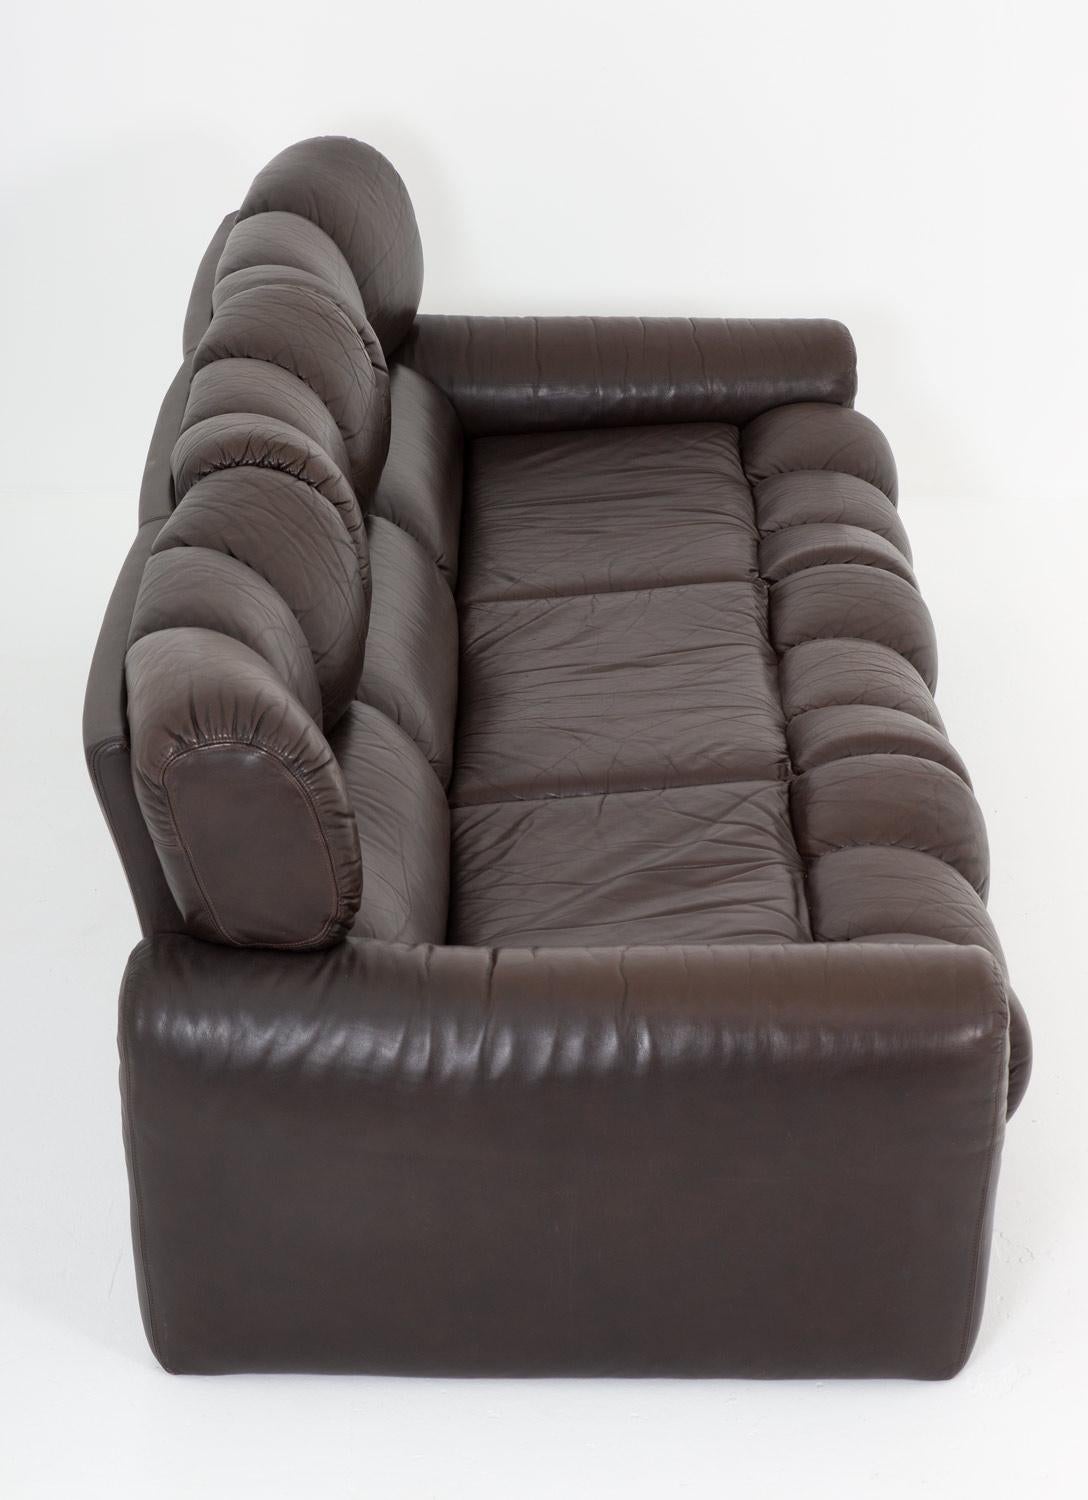 ikea leather sofa